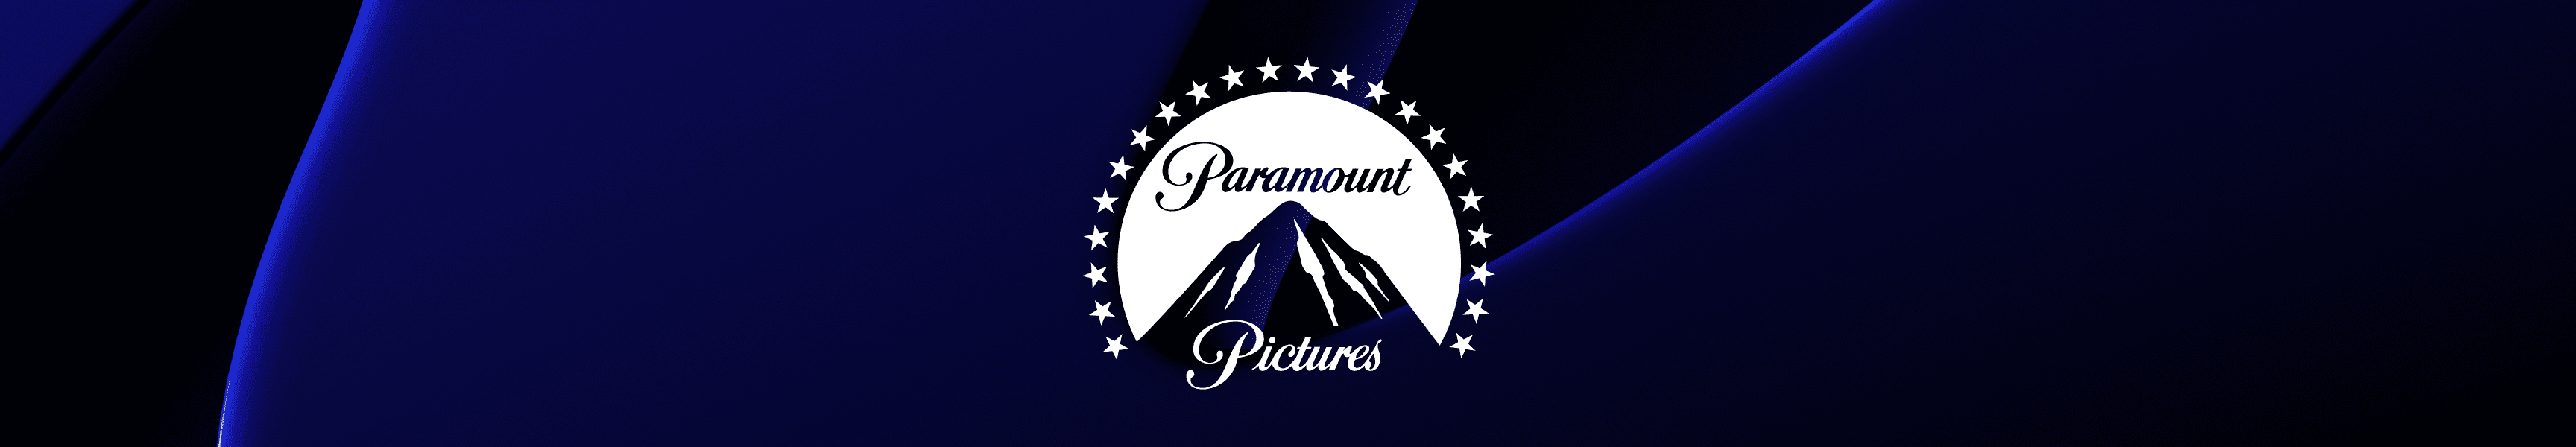 Paramount Pictures Fundas de móvil